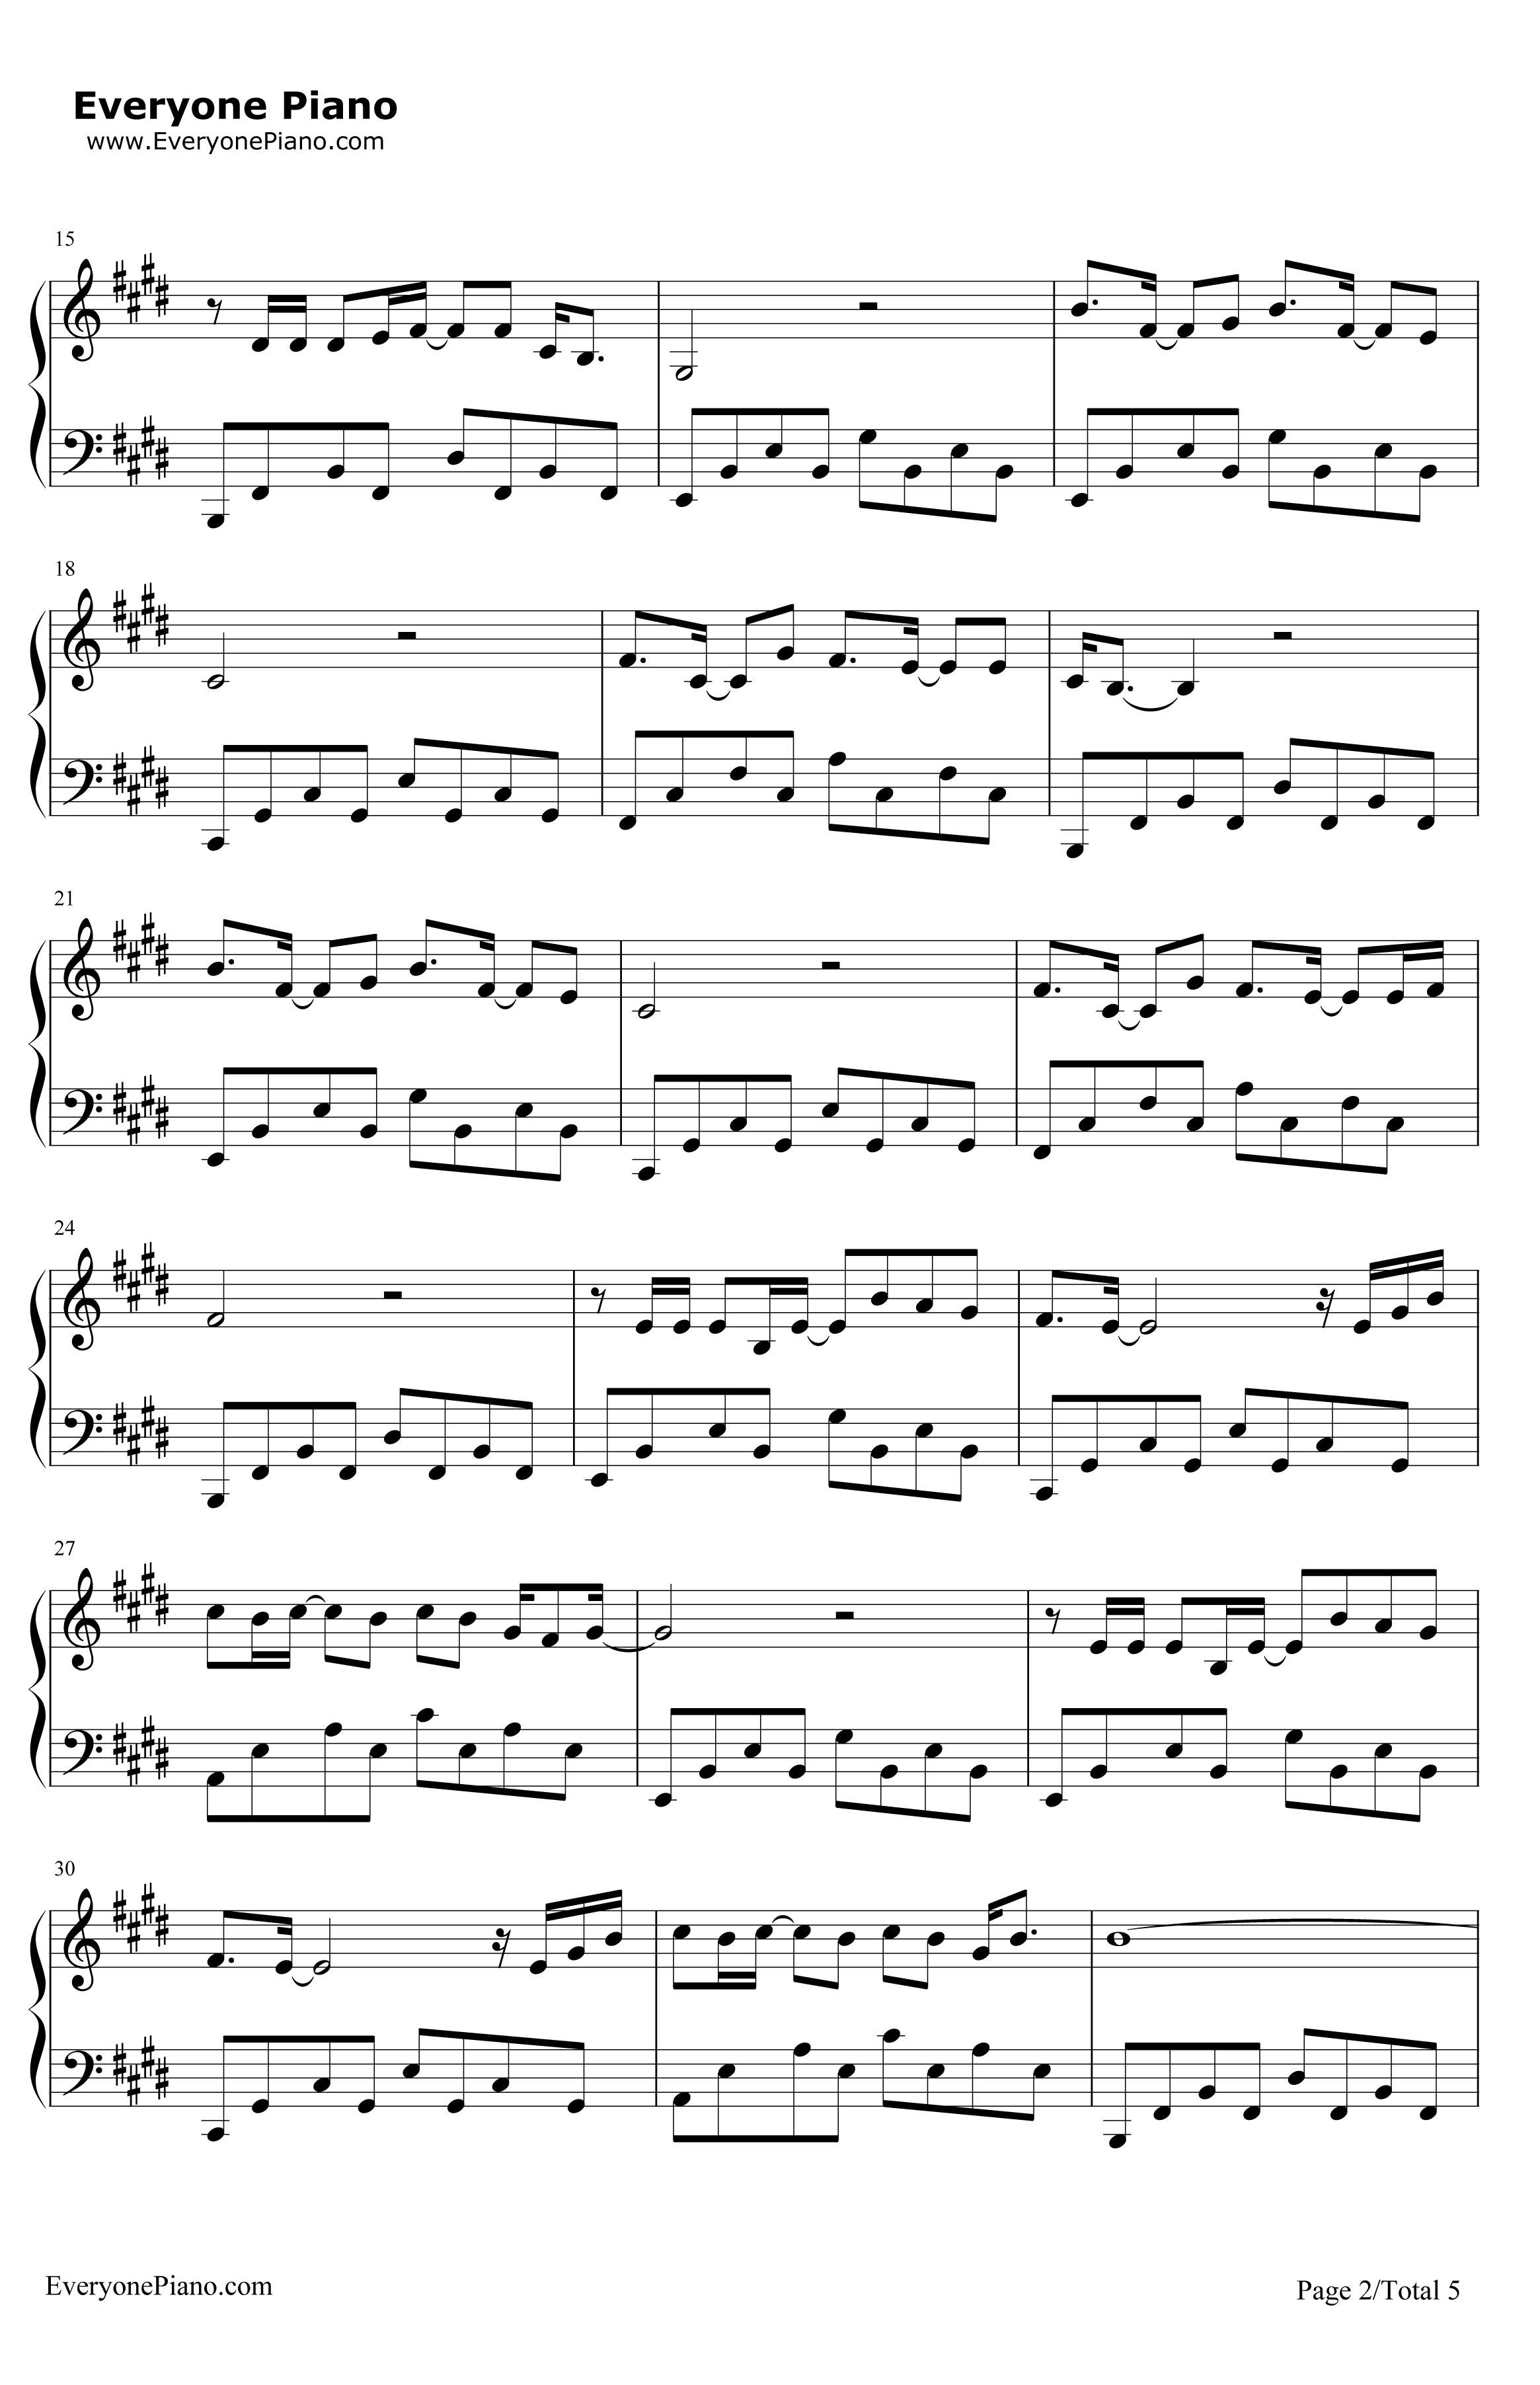 传奇钢琴谱-王菲2